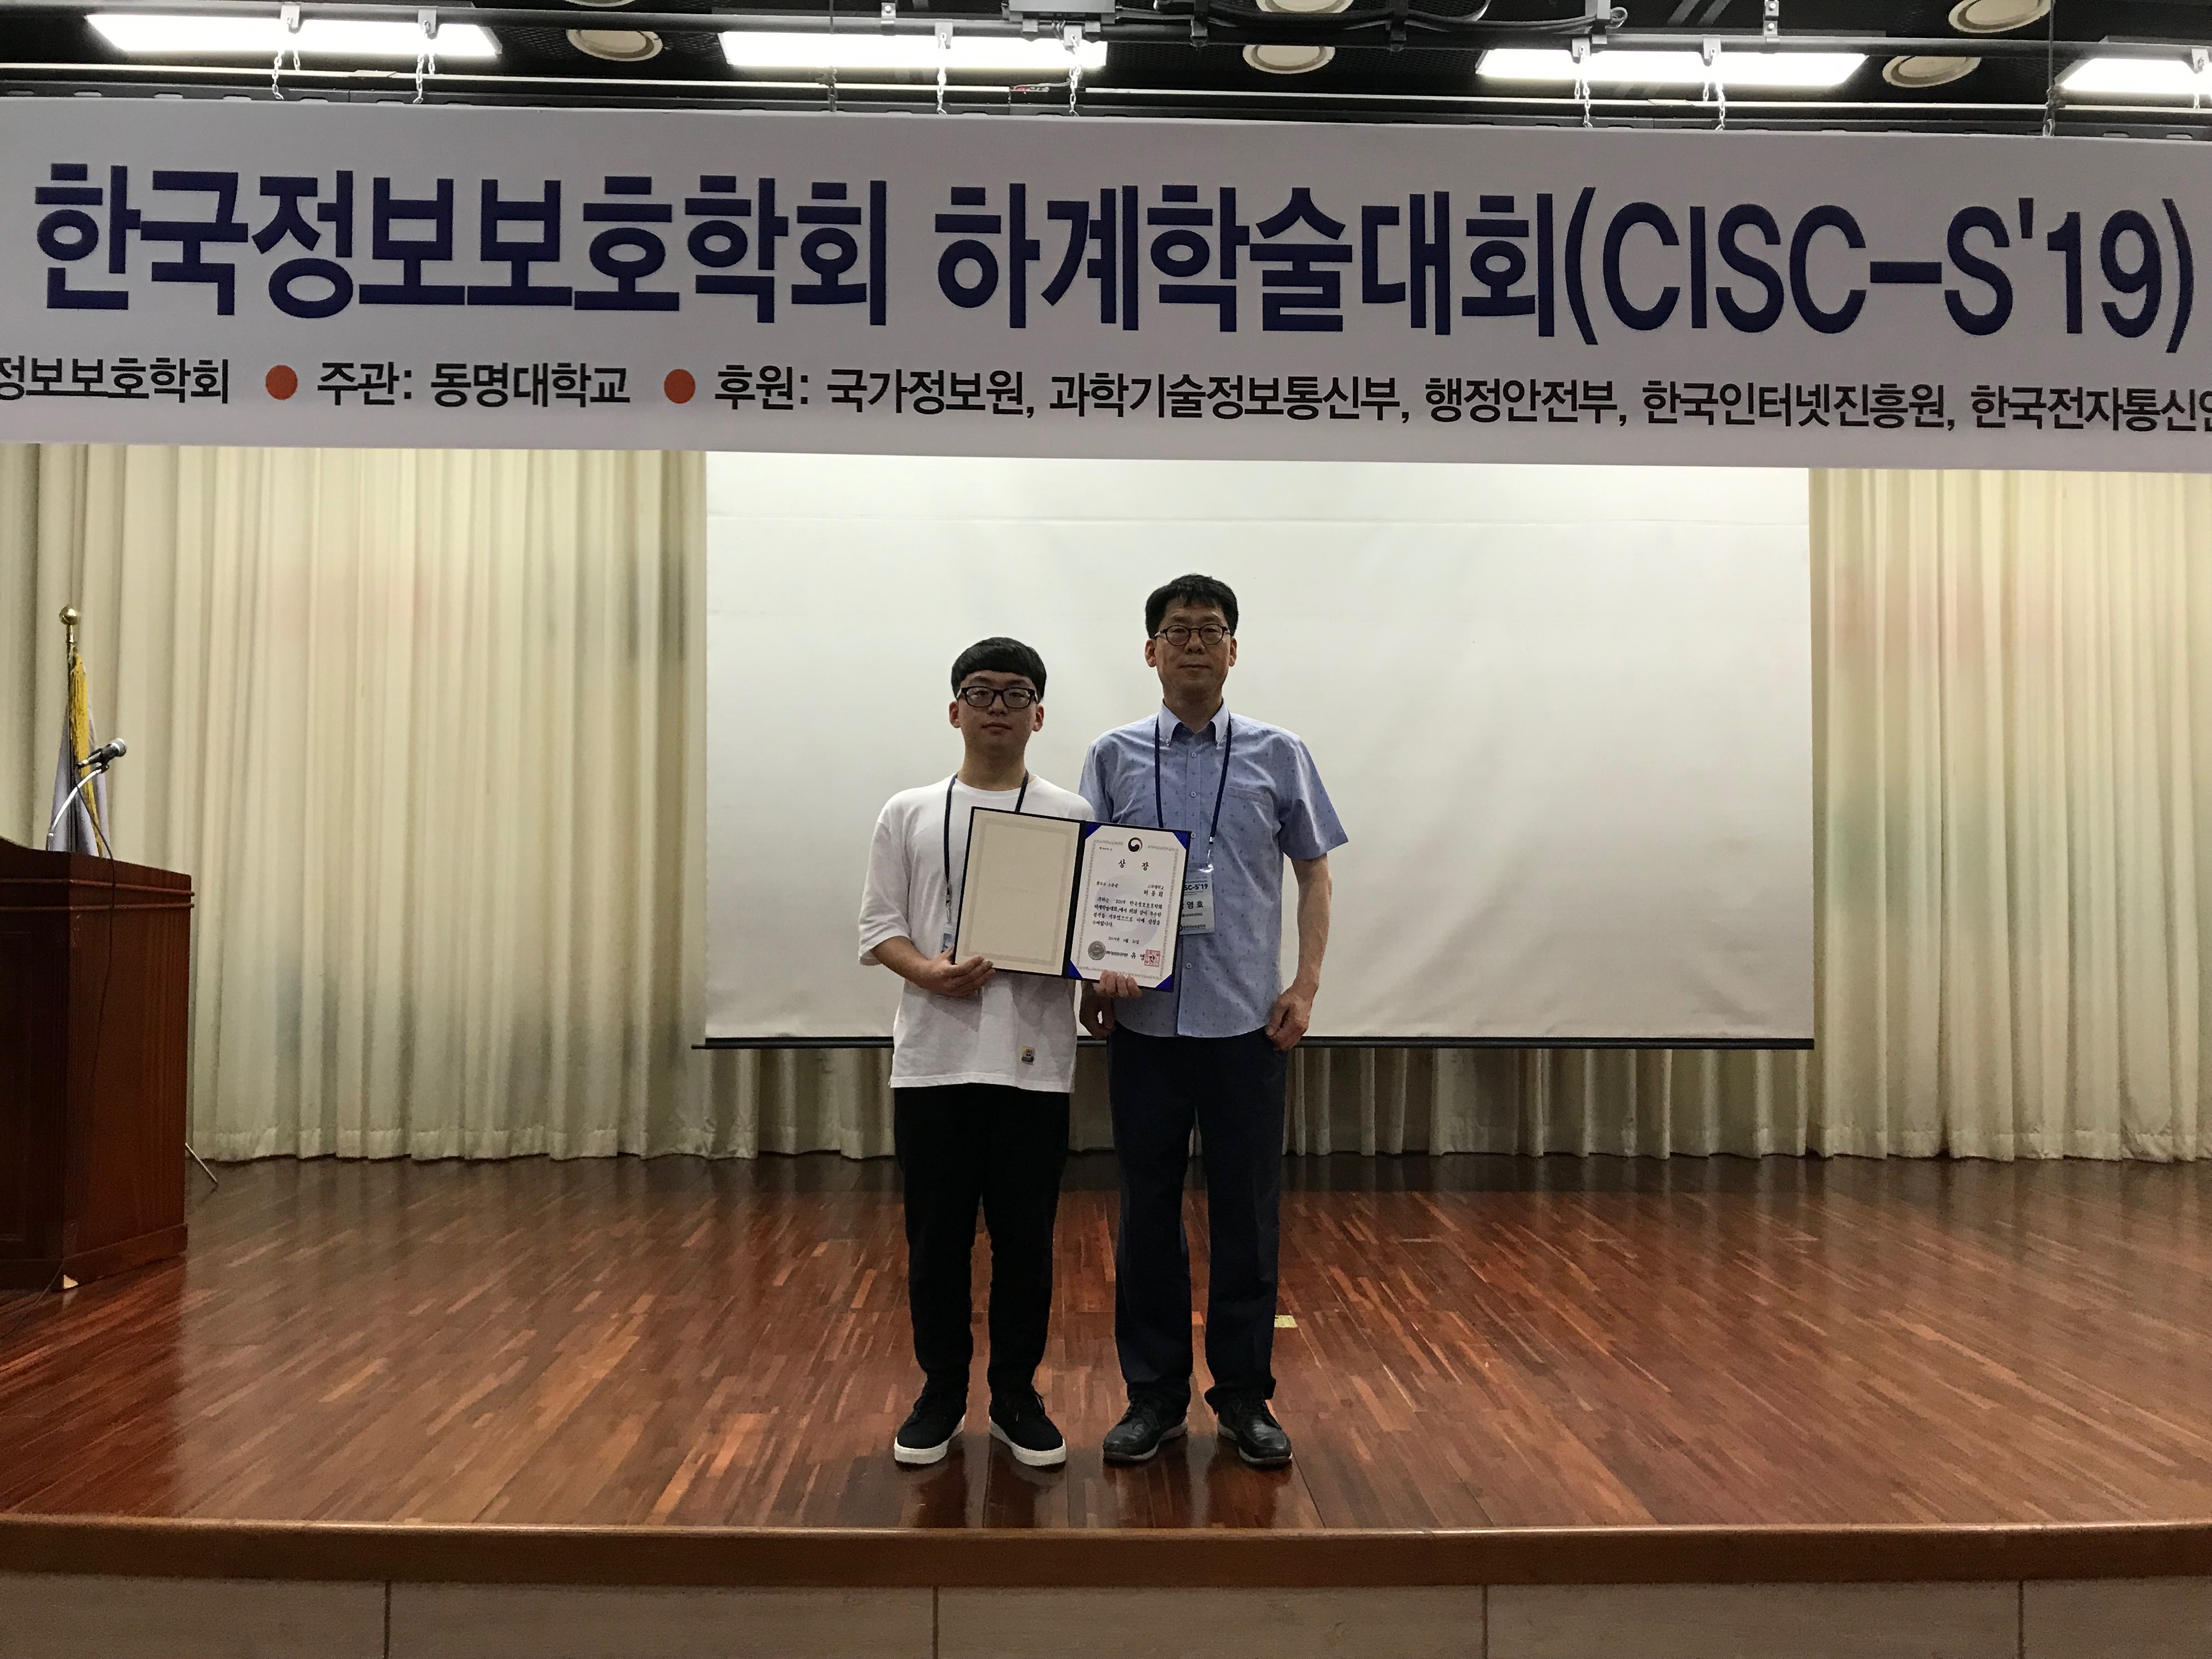 세종사이버대학교, 2019 한국정보보호학회 하계학술대회(CISC-S'19) 양자내성암호 기술 최우수상 수상